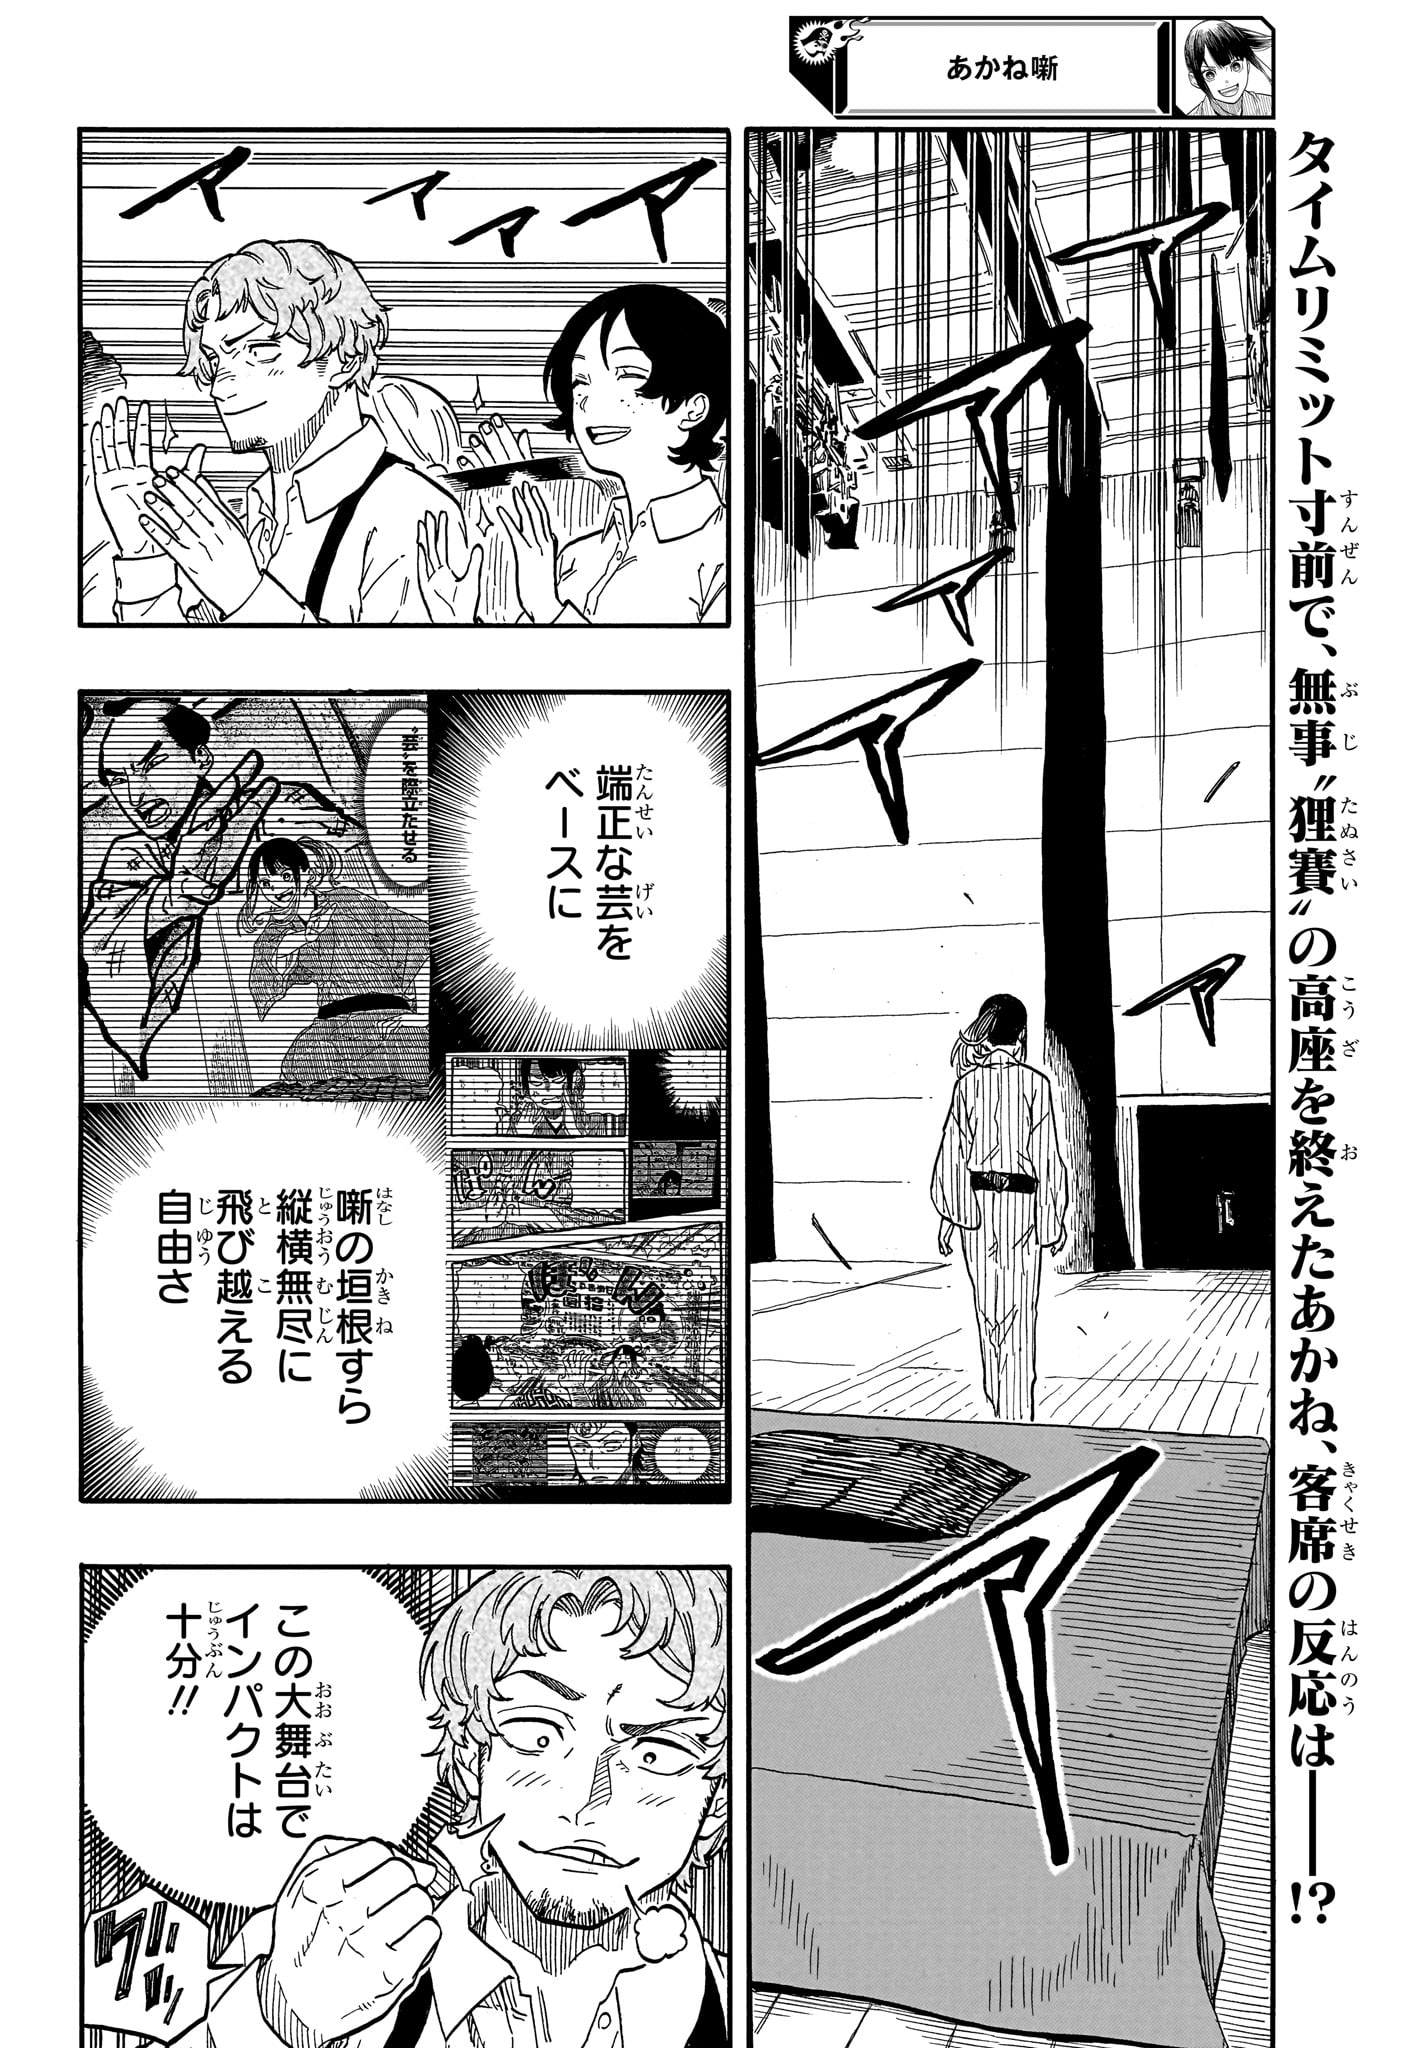 Akane-Banashi - Chapter 102 - Page 2